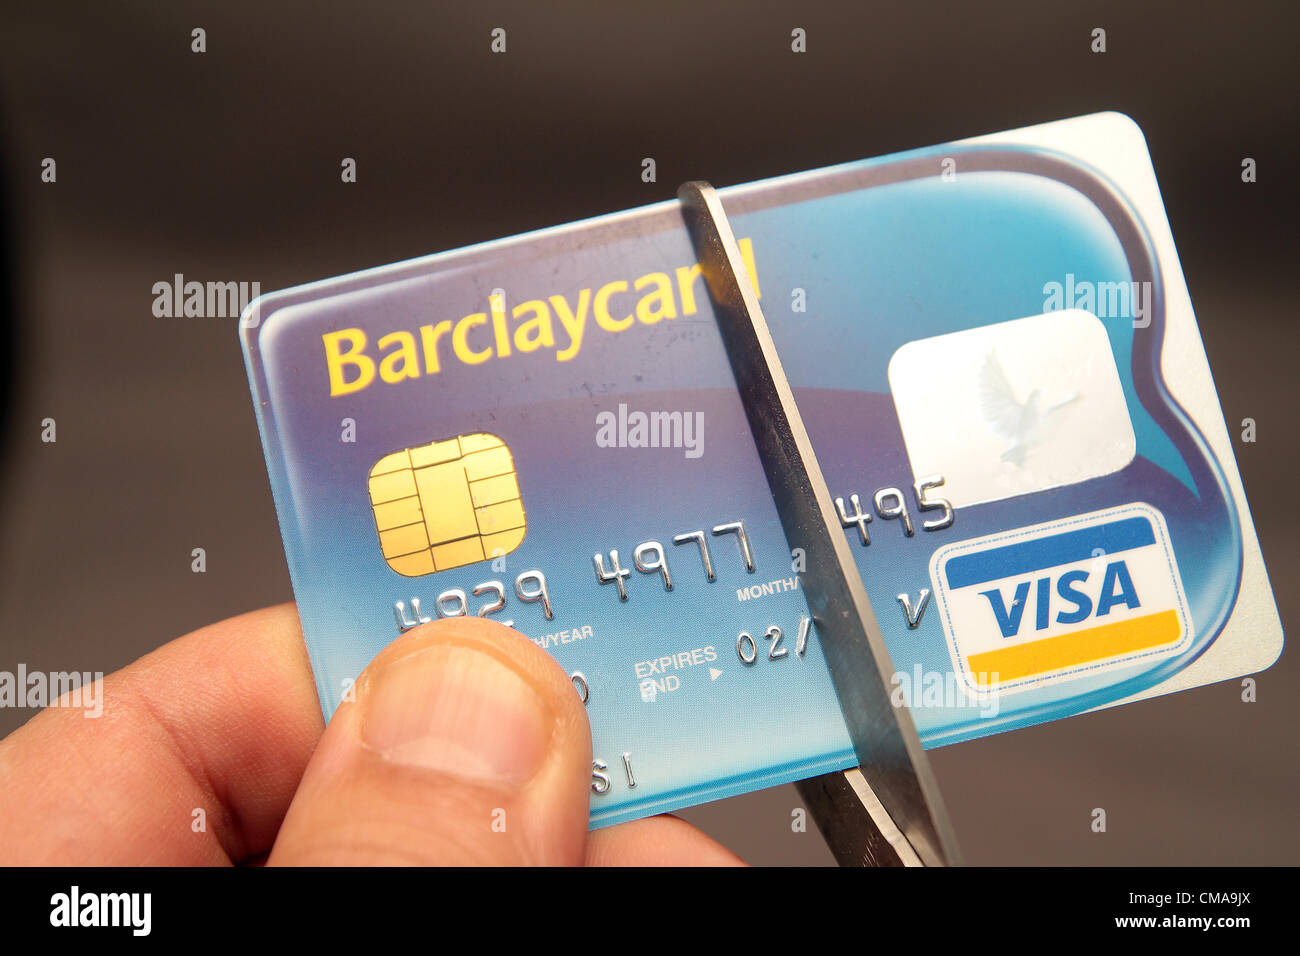 Barclays card immagini e fotografie stock ad alta risoluzione - Alamy